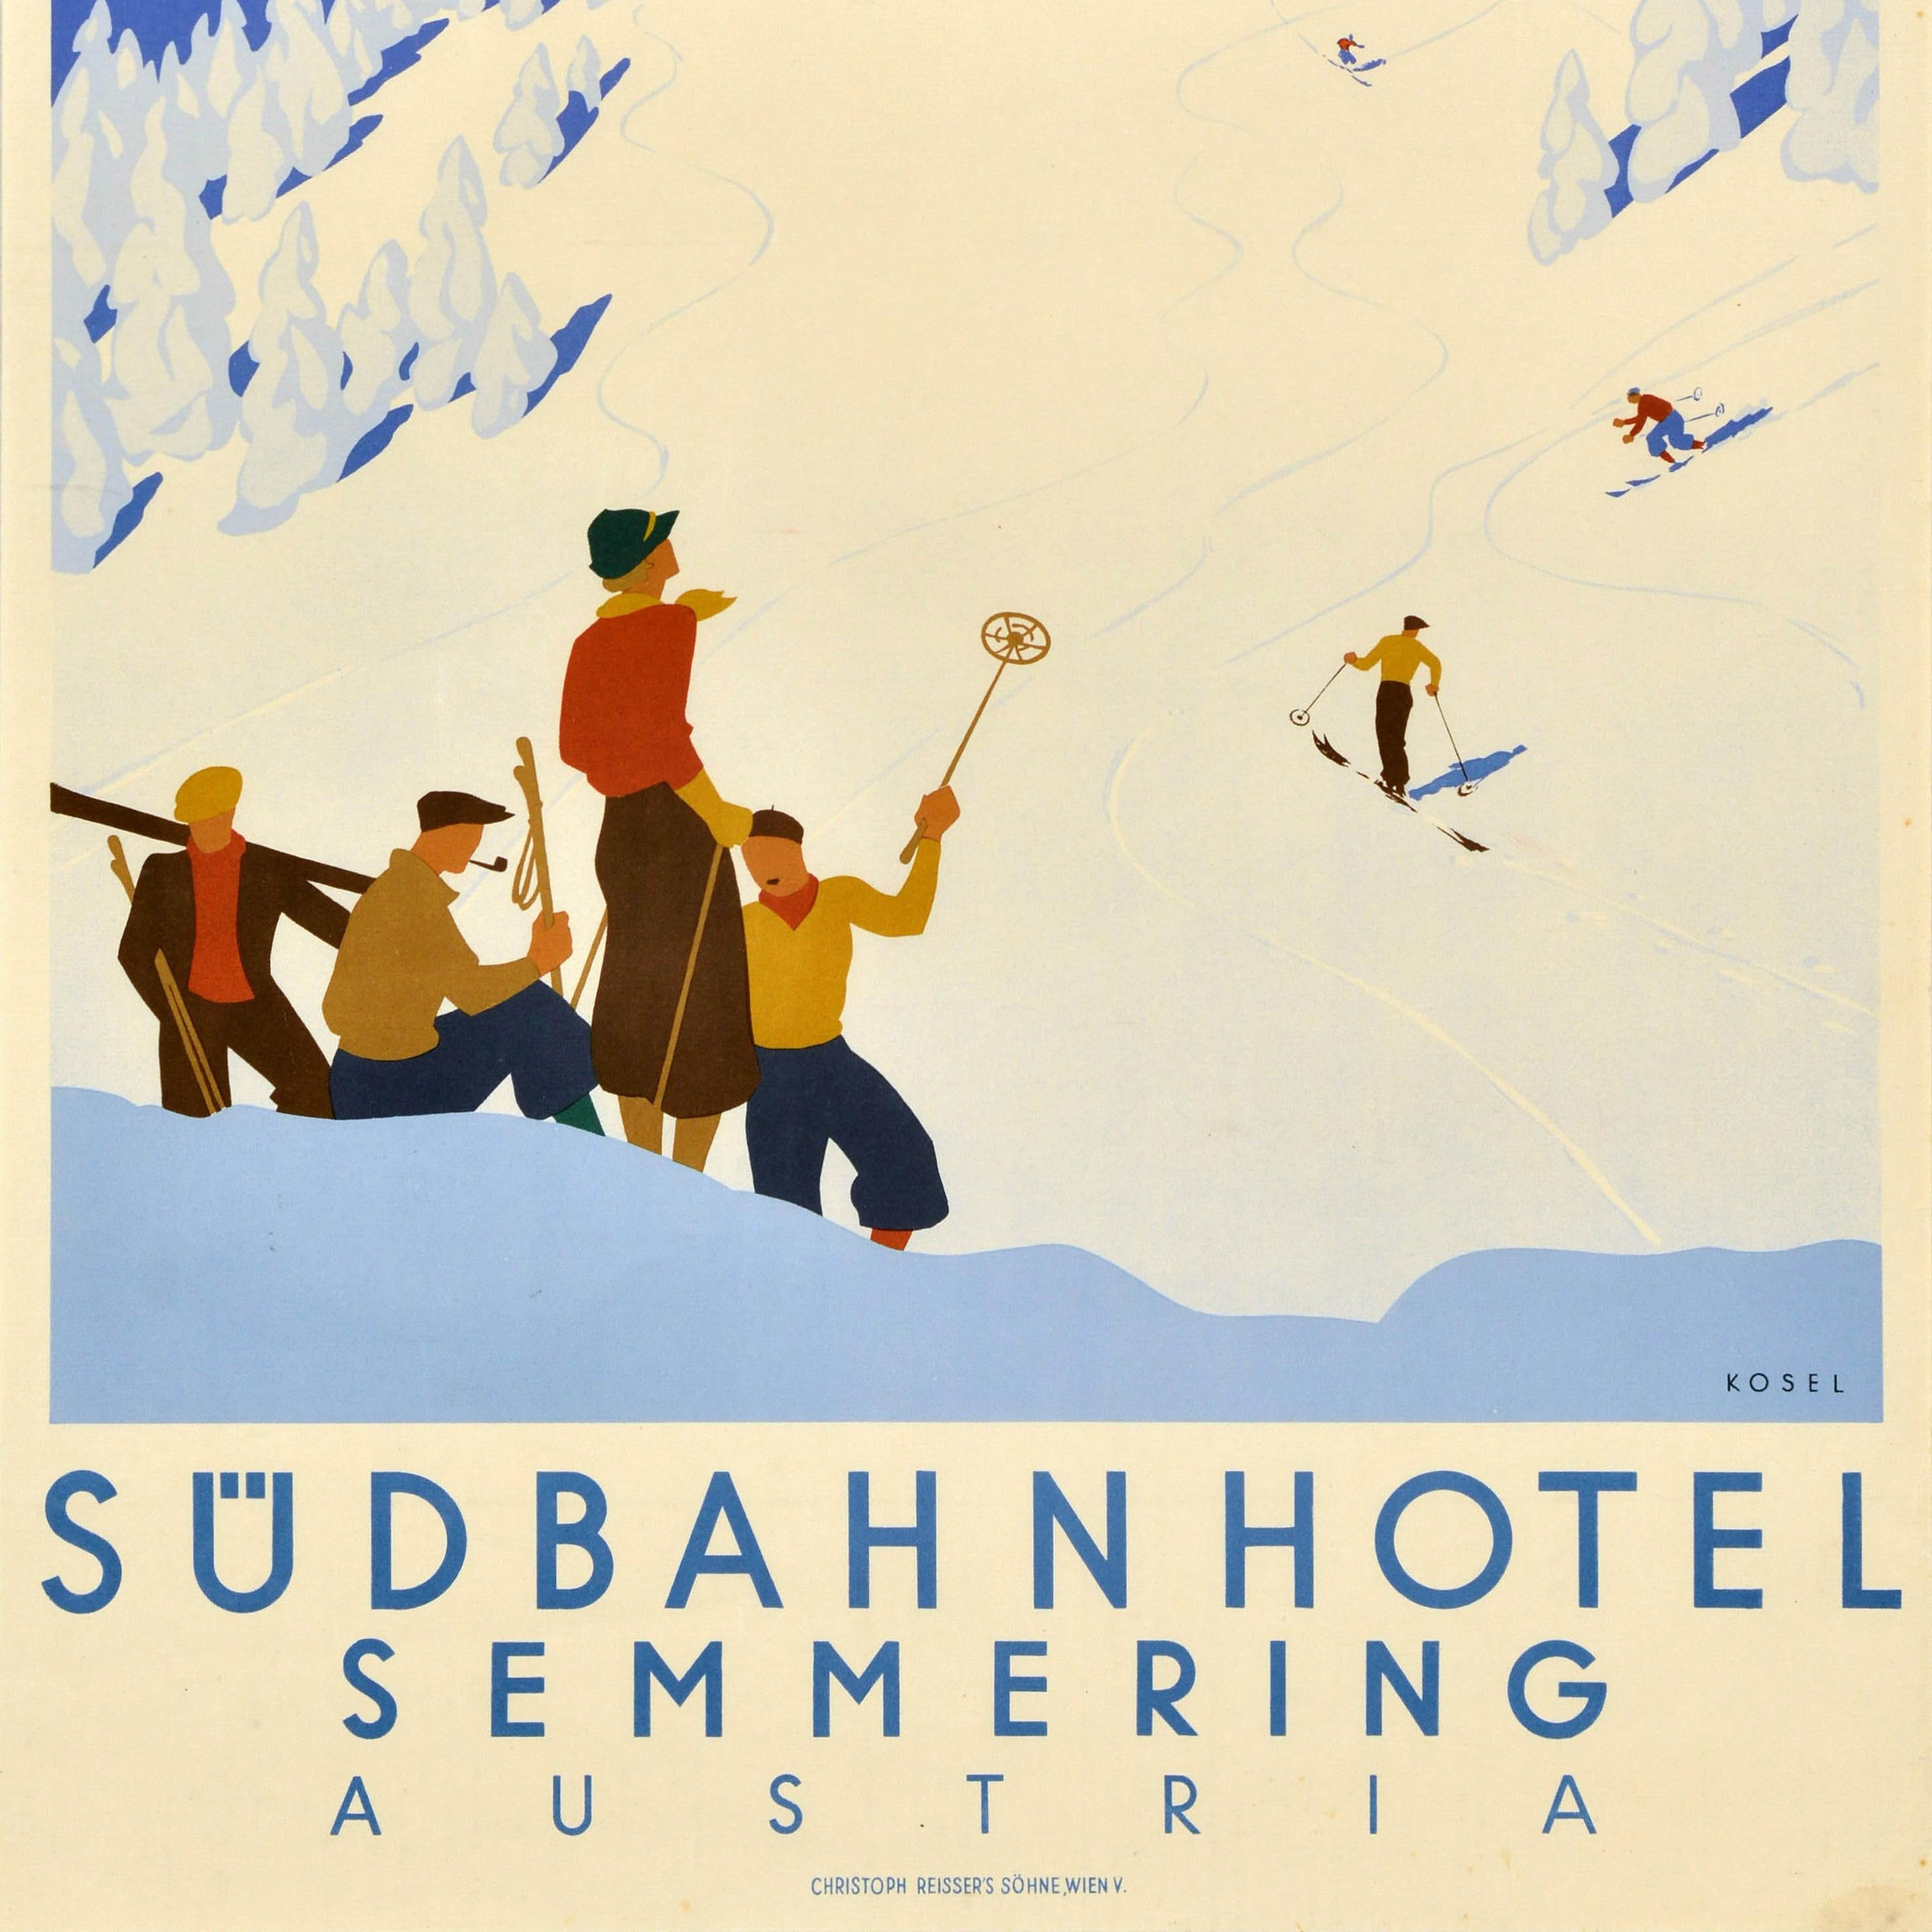 Original-Reise-Werbeplakat für das Sudbahnhotel in Semmering mit einem großartigen Bild im Art-Déco-Stil, das Menschen beim Skifahren auf den Pisten vor dem imposanten Grand Hotel zeigt, mit schneebedeckten Bergen am Horizont und schneebedeckten